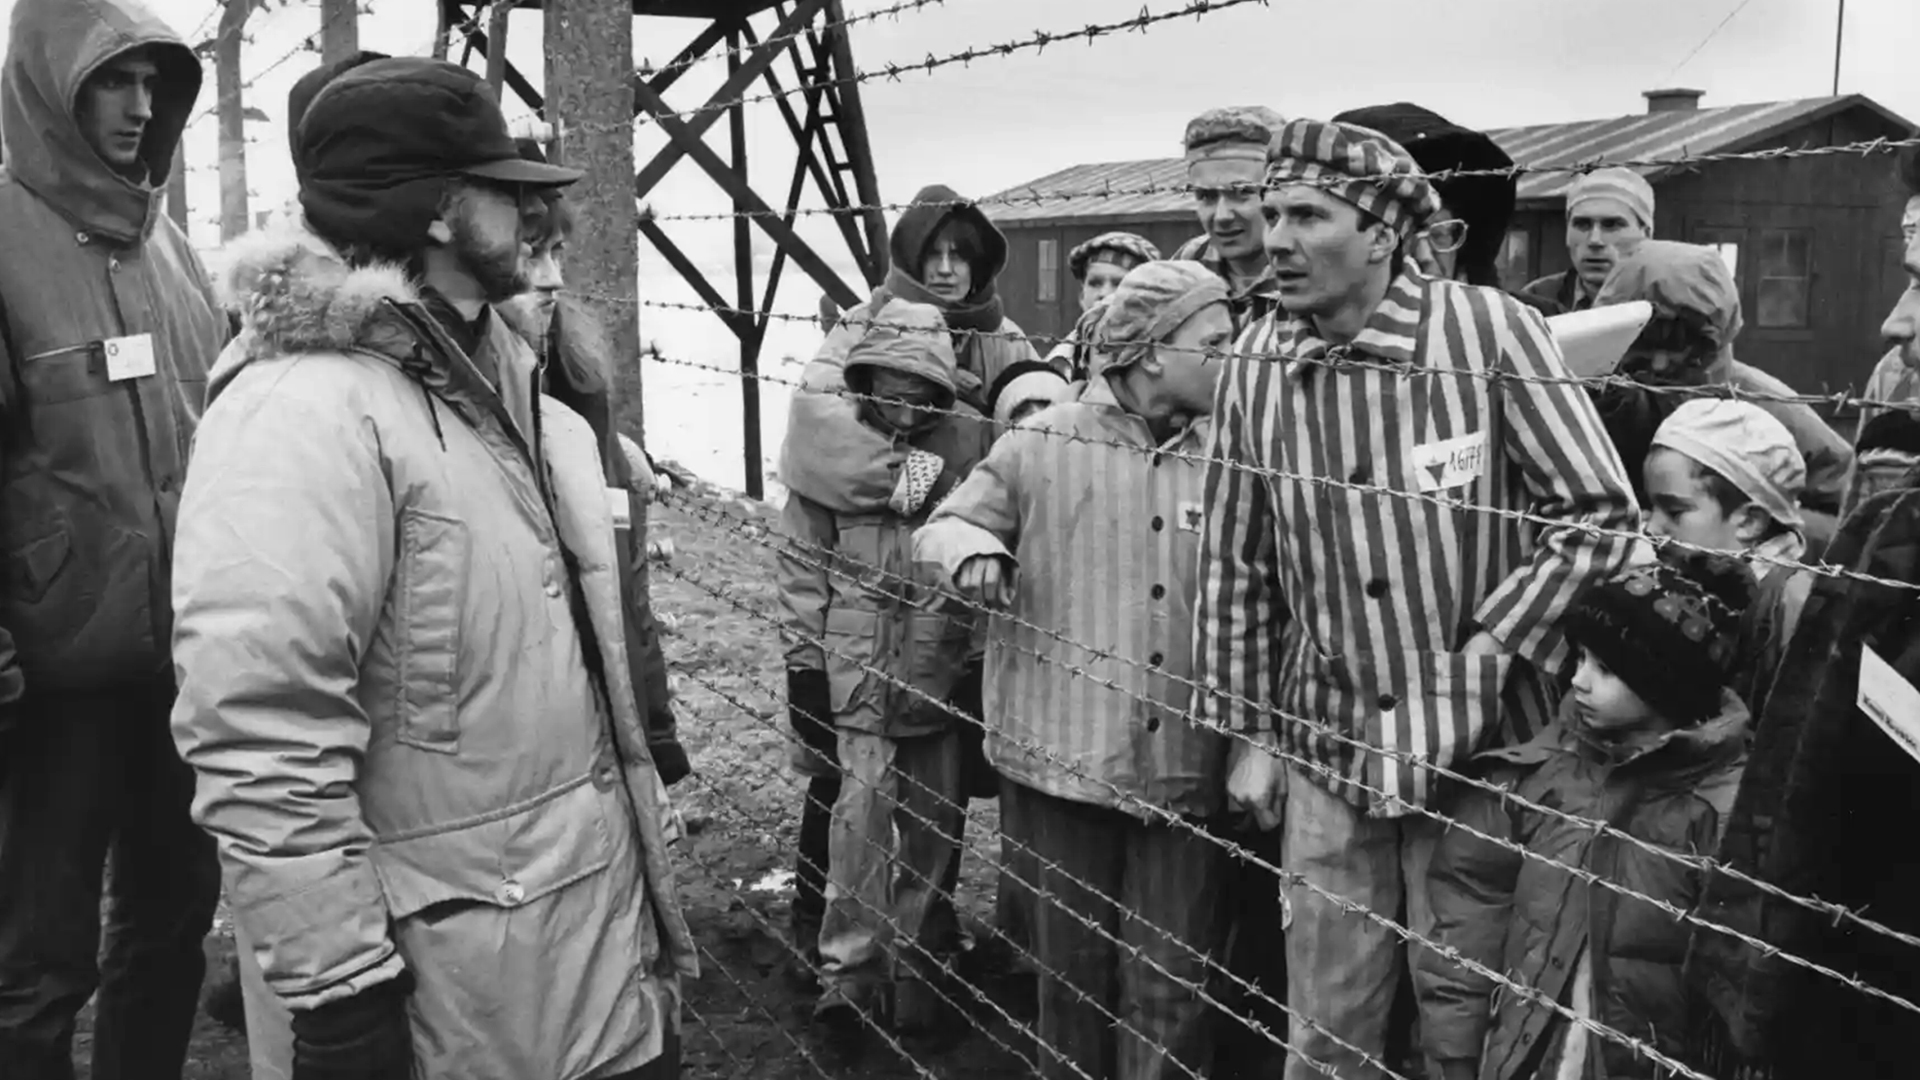 Spielberg asegura que se siente “muy orgulloso” de La lista de Schindler y que no se ha sentido así de “realizado” con ninguna de las películas que dirigió después